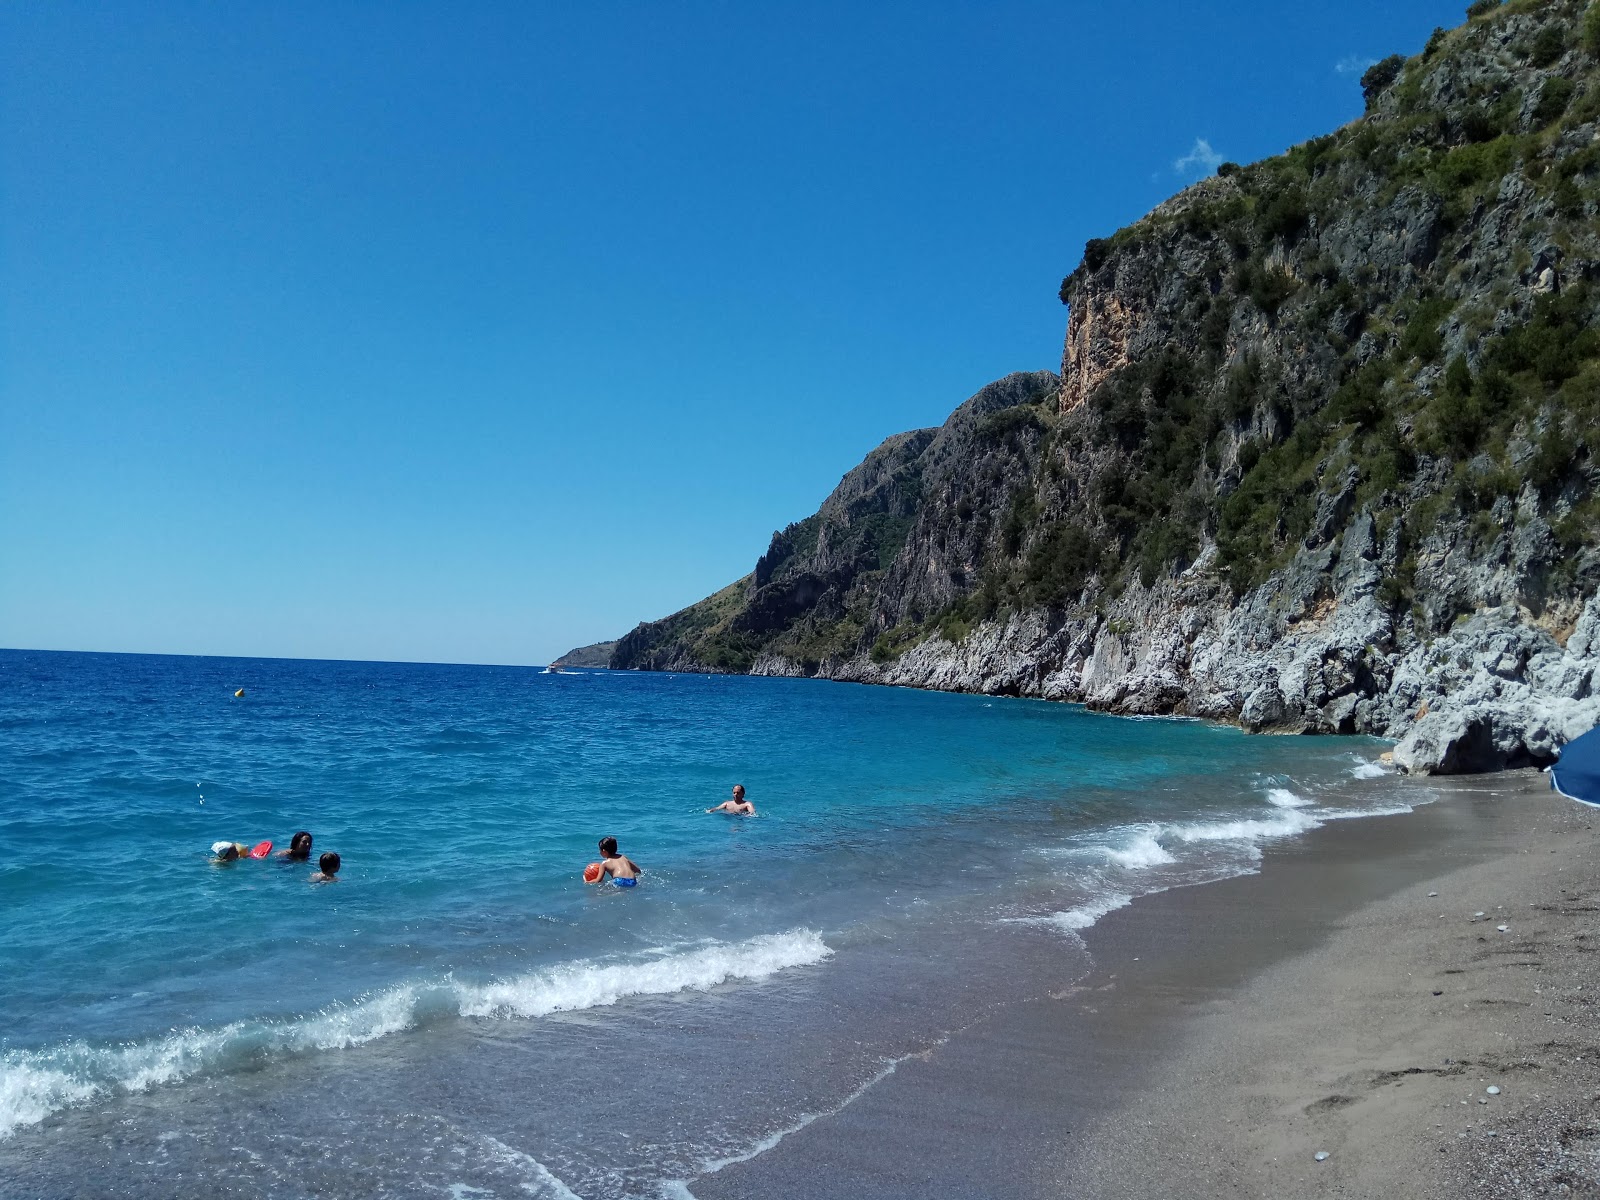 Photo of Spiaggia della Sciabica located in natural area